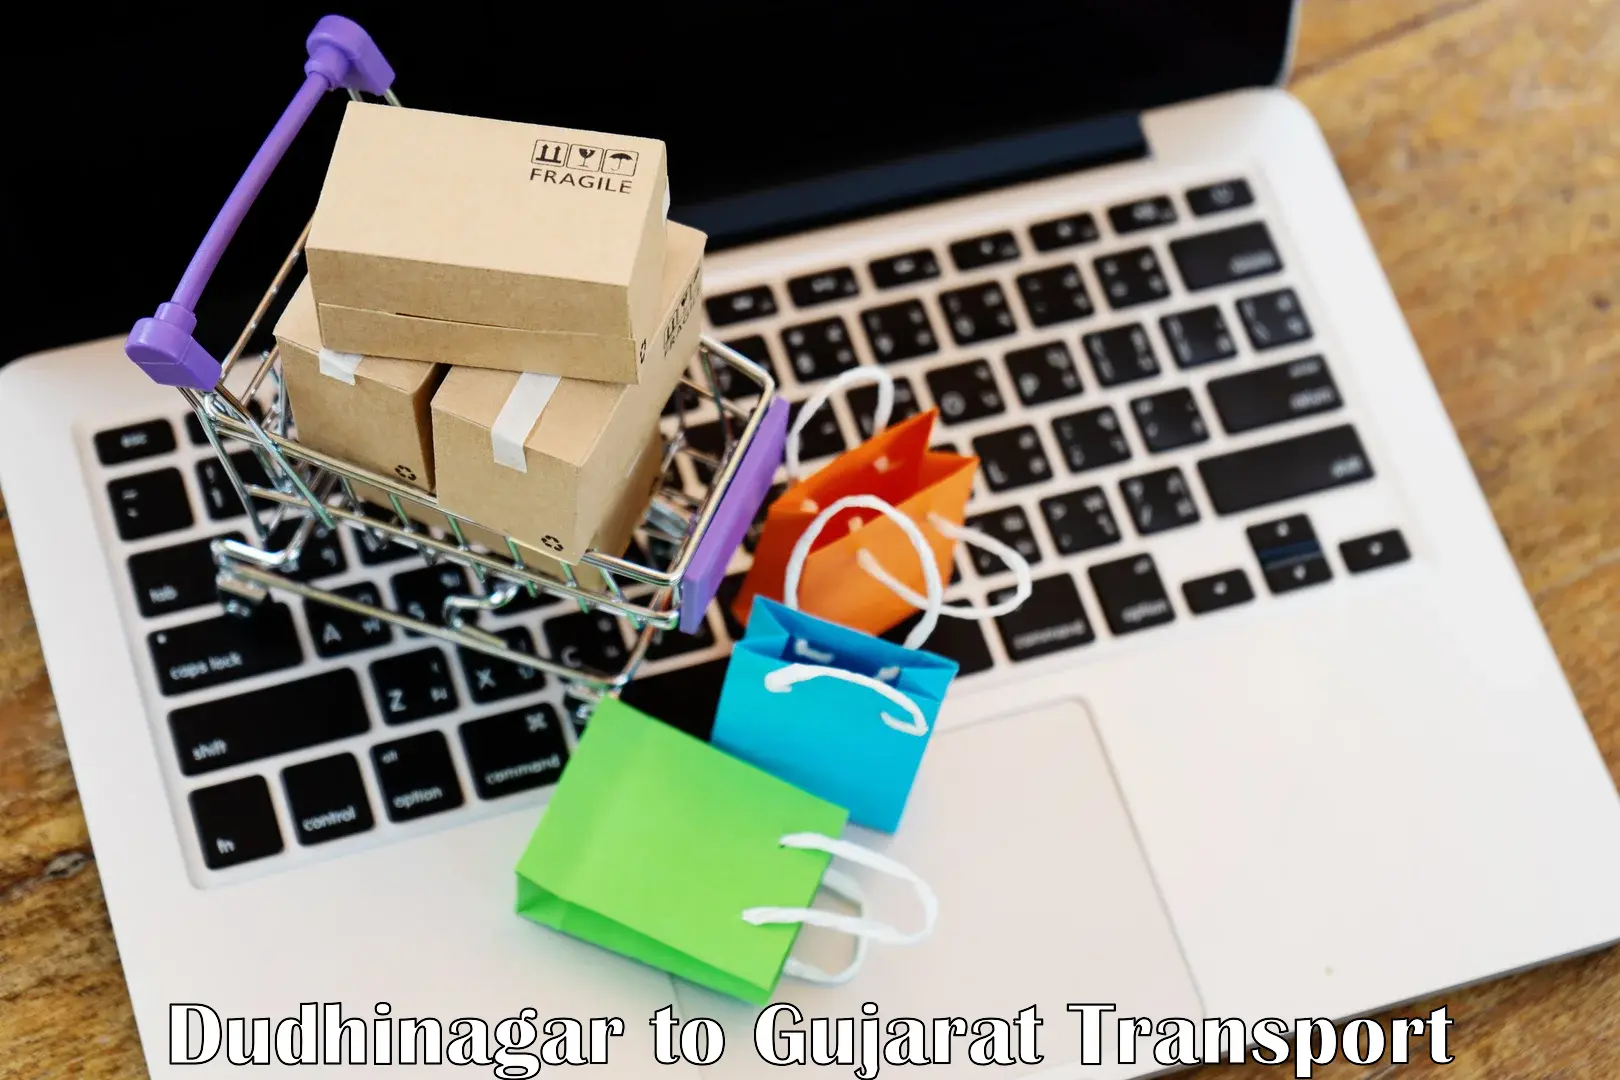 Commercial transport service Dudhinagar to Kalol Gujarat